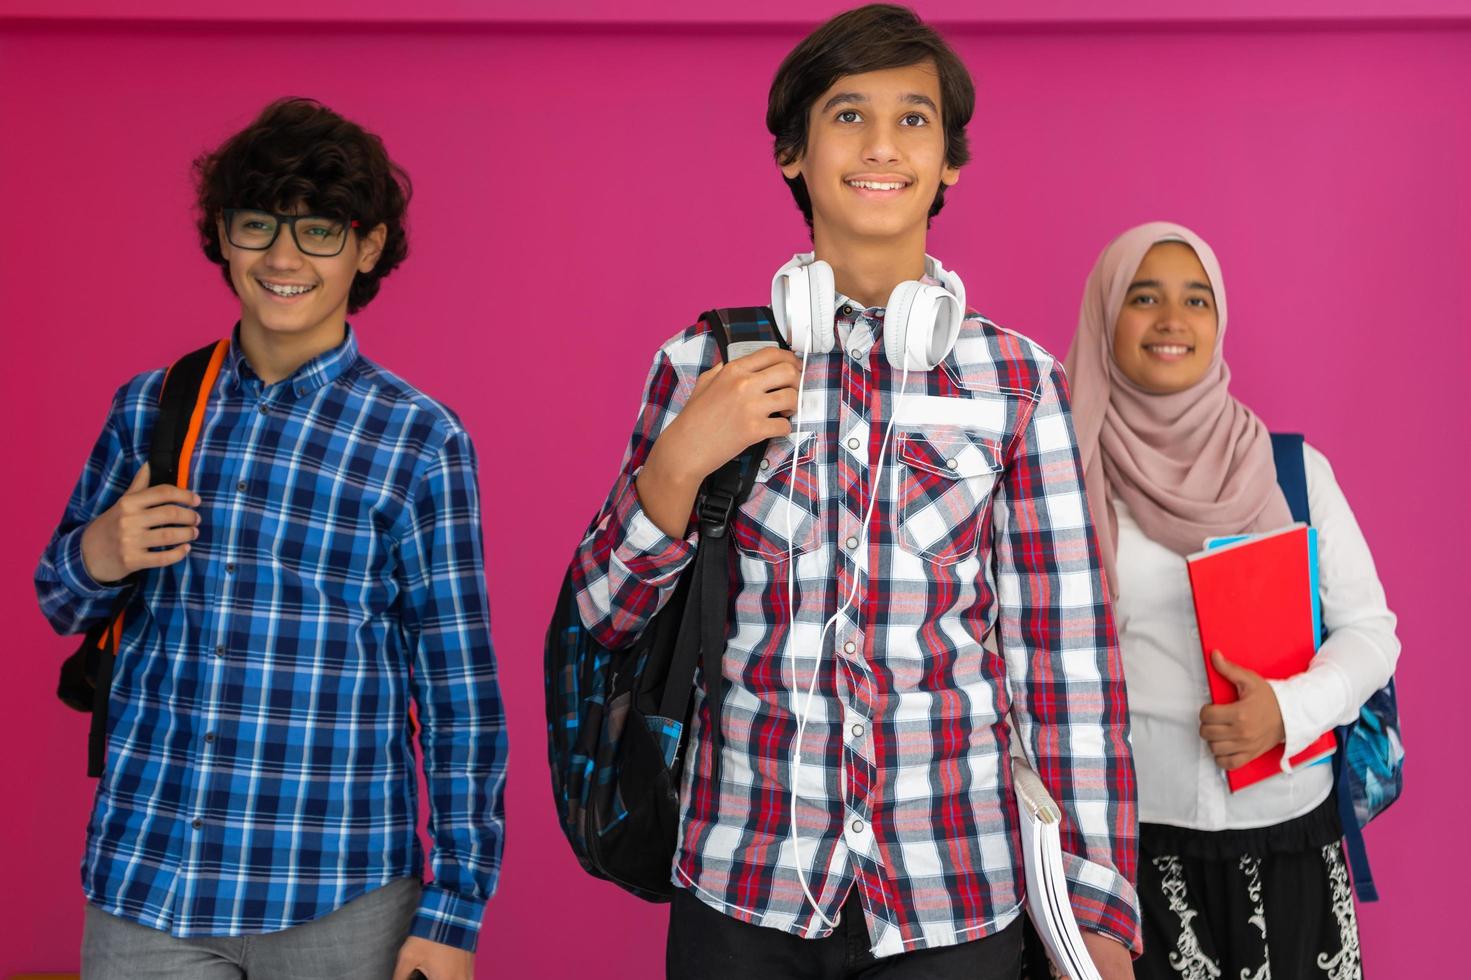 en grupp av arab tonåringar, en studerande team gående framåt- in i de framtida och tillbaka till skola de begrepp av en rosa bakgrund. de begrepp av framgångsrik utbildning för ung människor. selektiv fokus foto